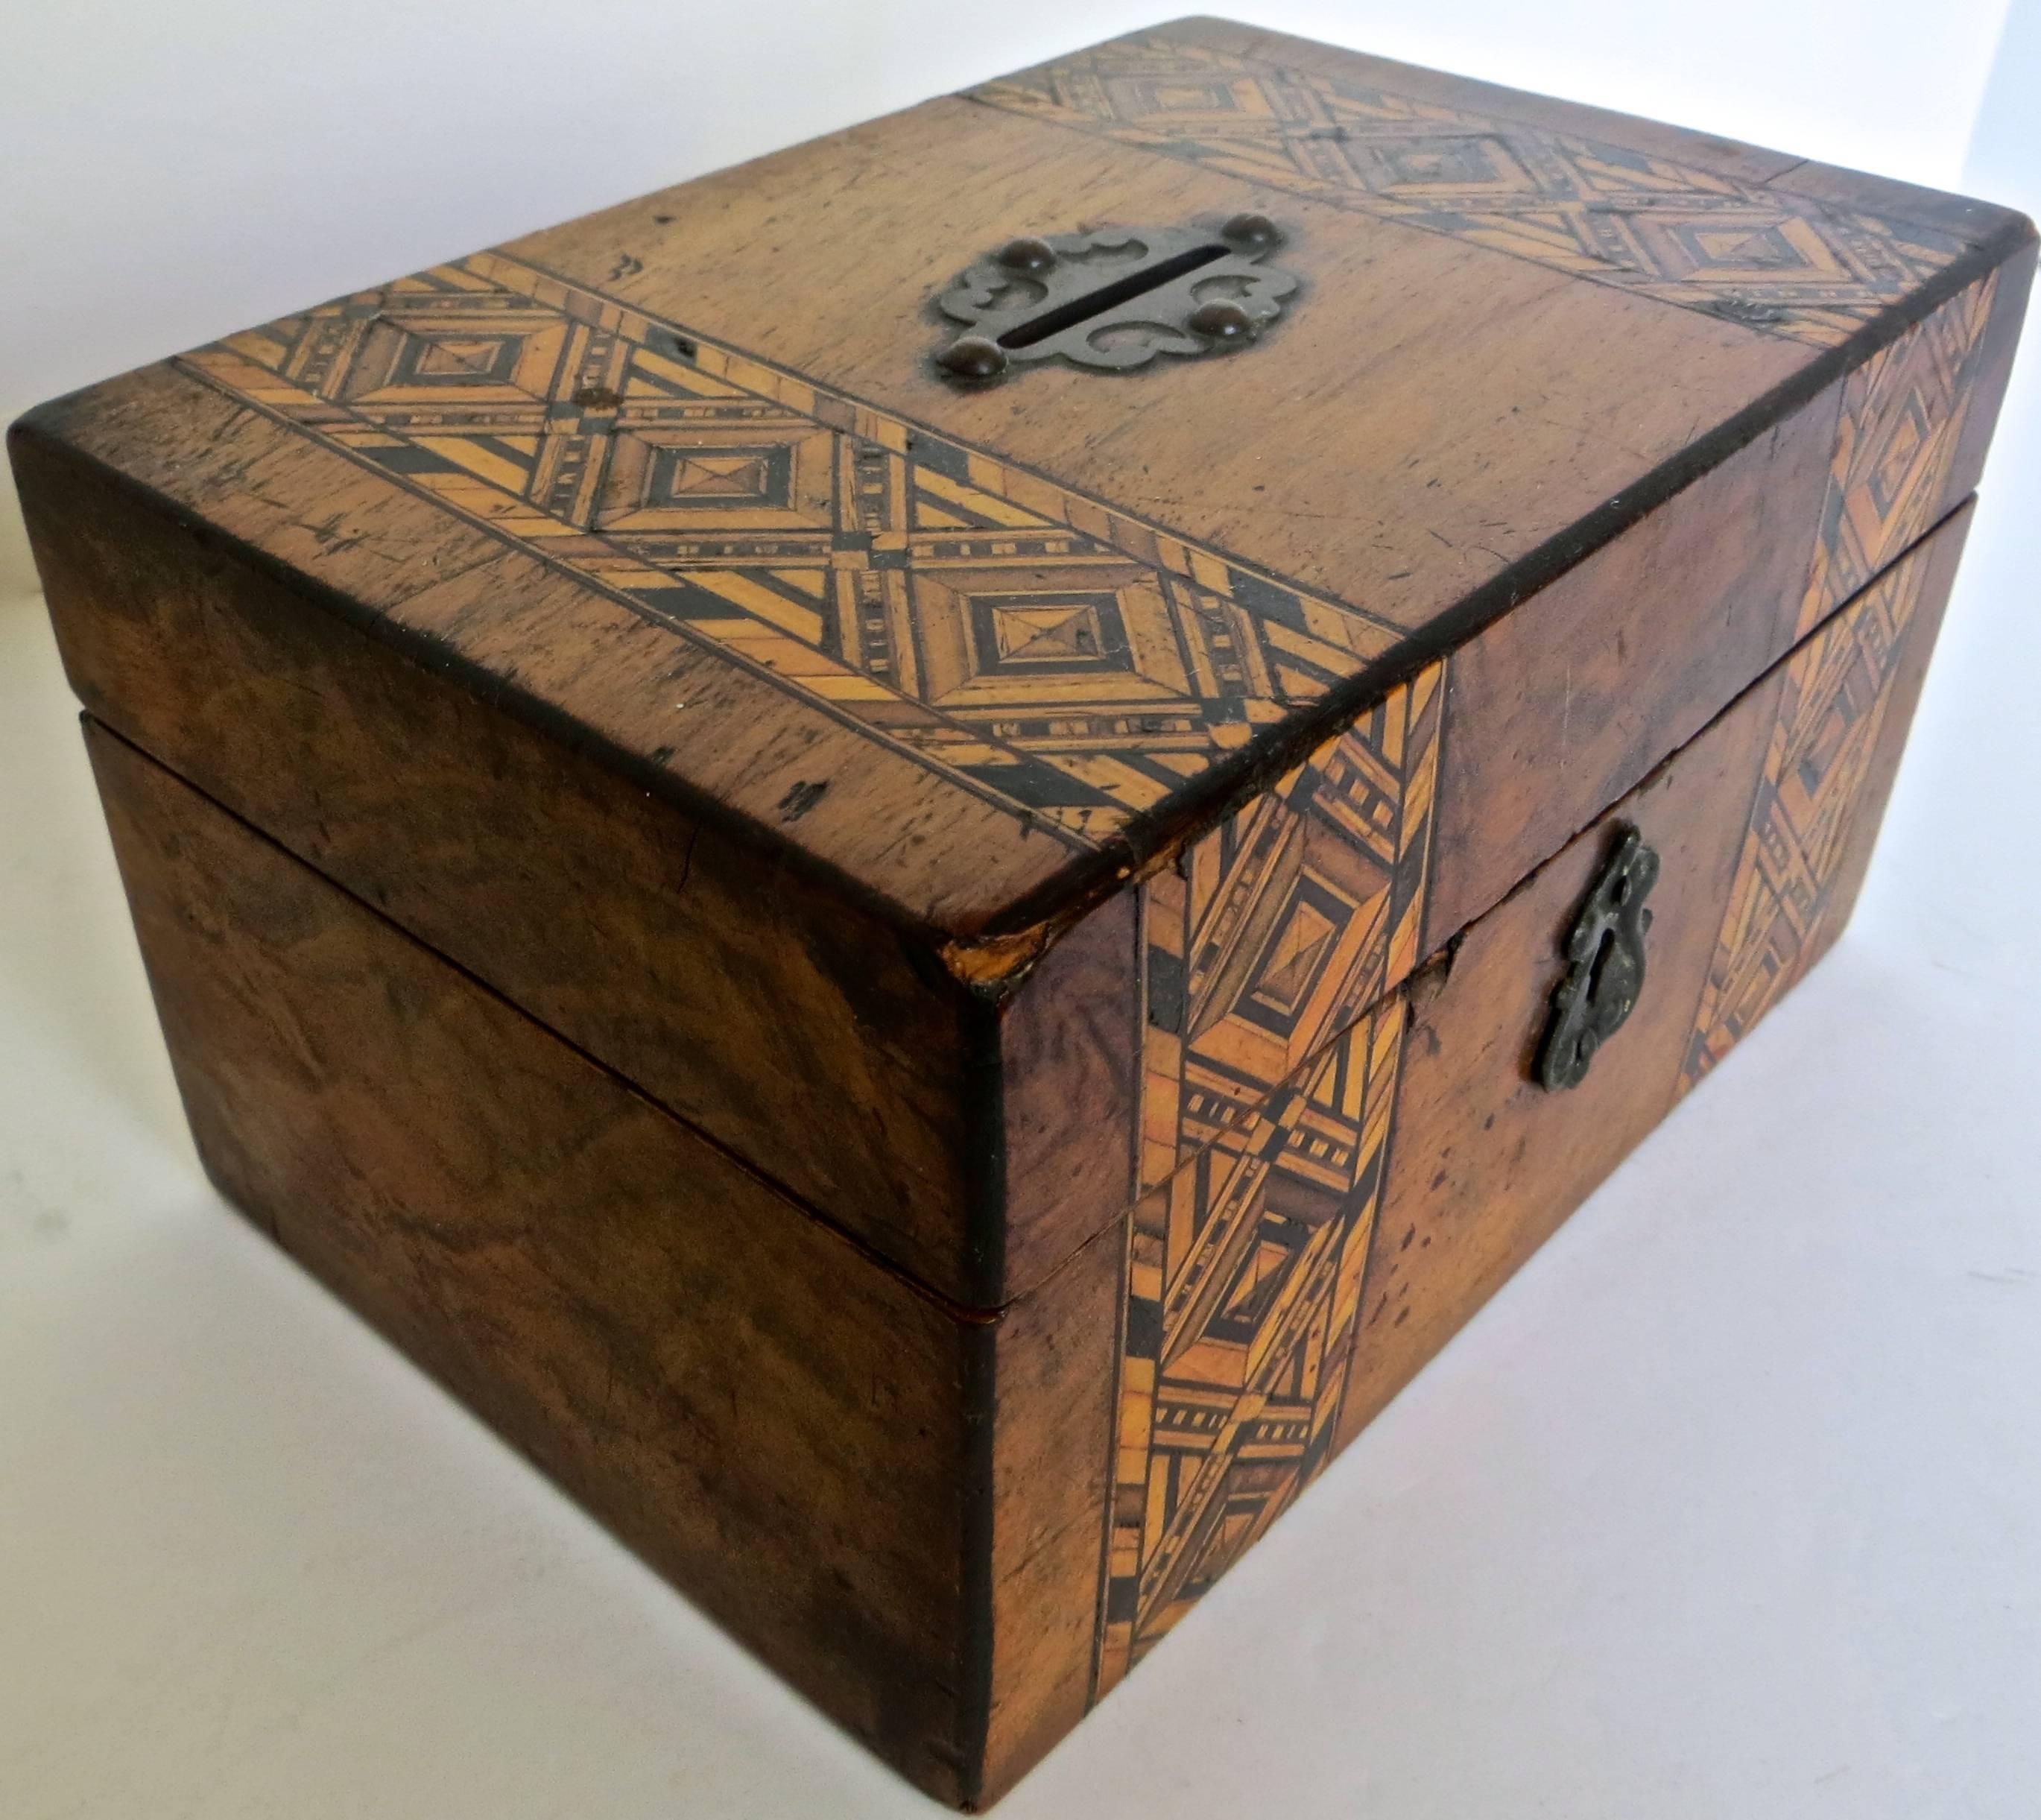 Ce banc d'alambic en forme de boîte de Tunbridge est originaire des industries artisanales de la ville de Tunbridge Wells, dans le Kent, en Angleterre, aux 18e et 19e siècles. Les boîtes étaient généralement incrustées d'une multitude de bois de